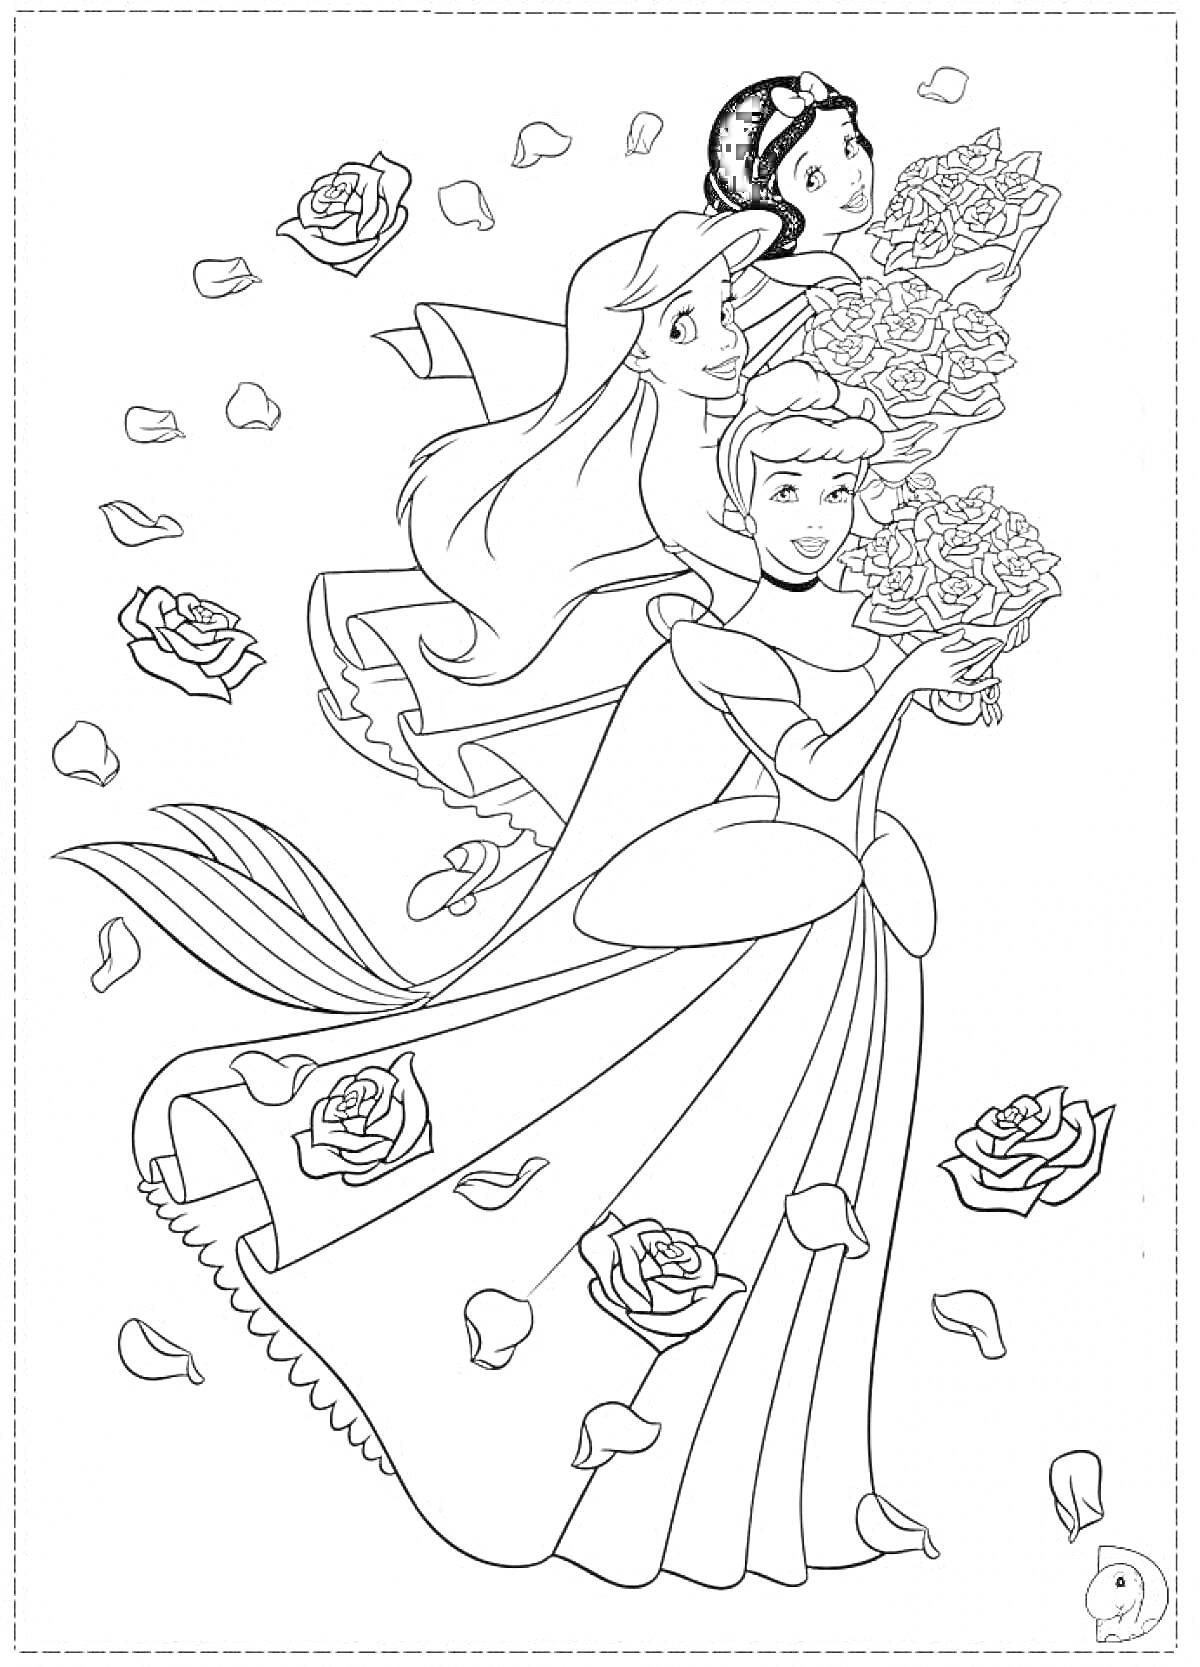 Раскраска Дисней принцессы с букетами роз (три принцессы - одна с распущенными волосами и хвостом русалки, вторая с короной и длинными волосами, третья с пышной юбкой. Вокруг летят лепестки и цветы роз).